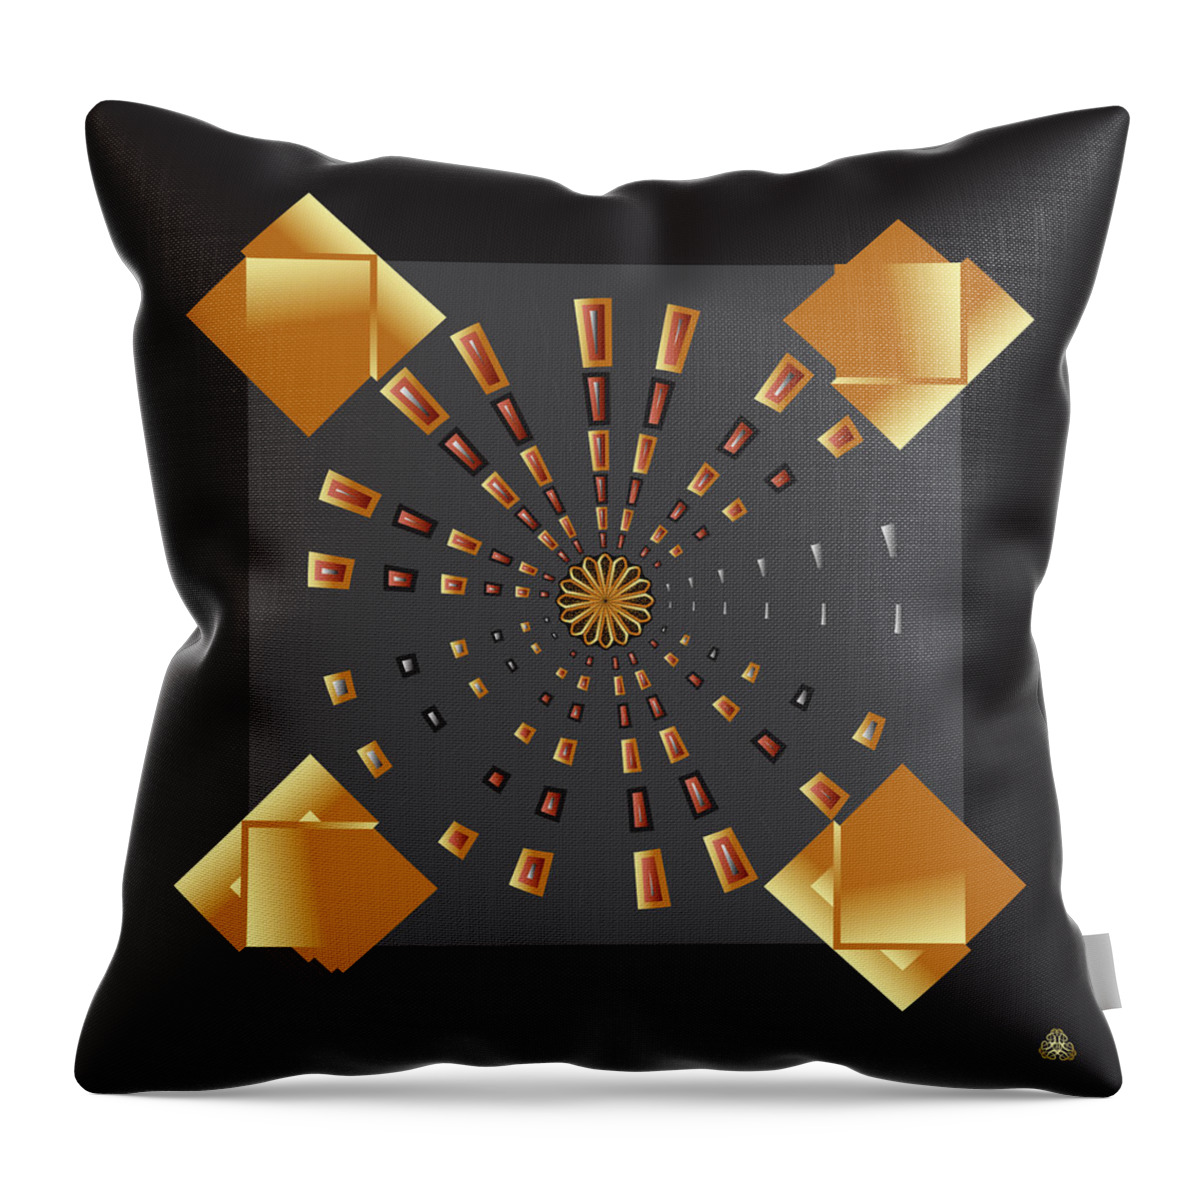 Mandala Throw Pillow featuring the digital art Kuklos No 4394 by Alan Bennington